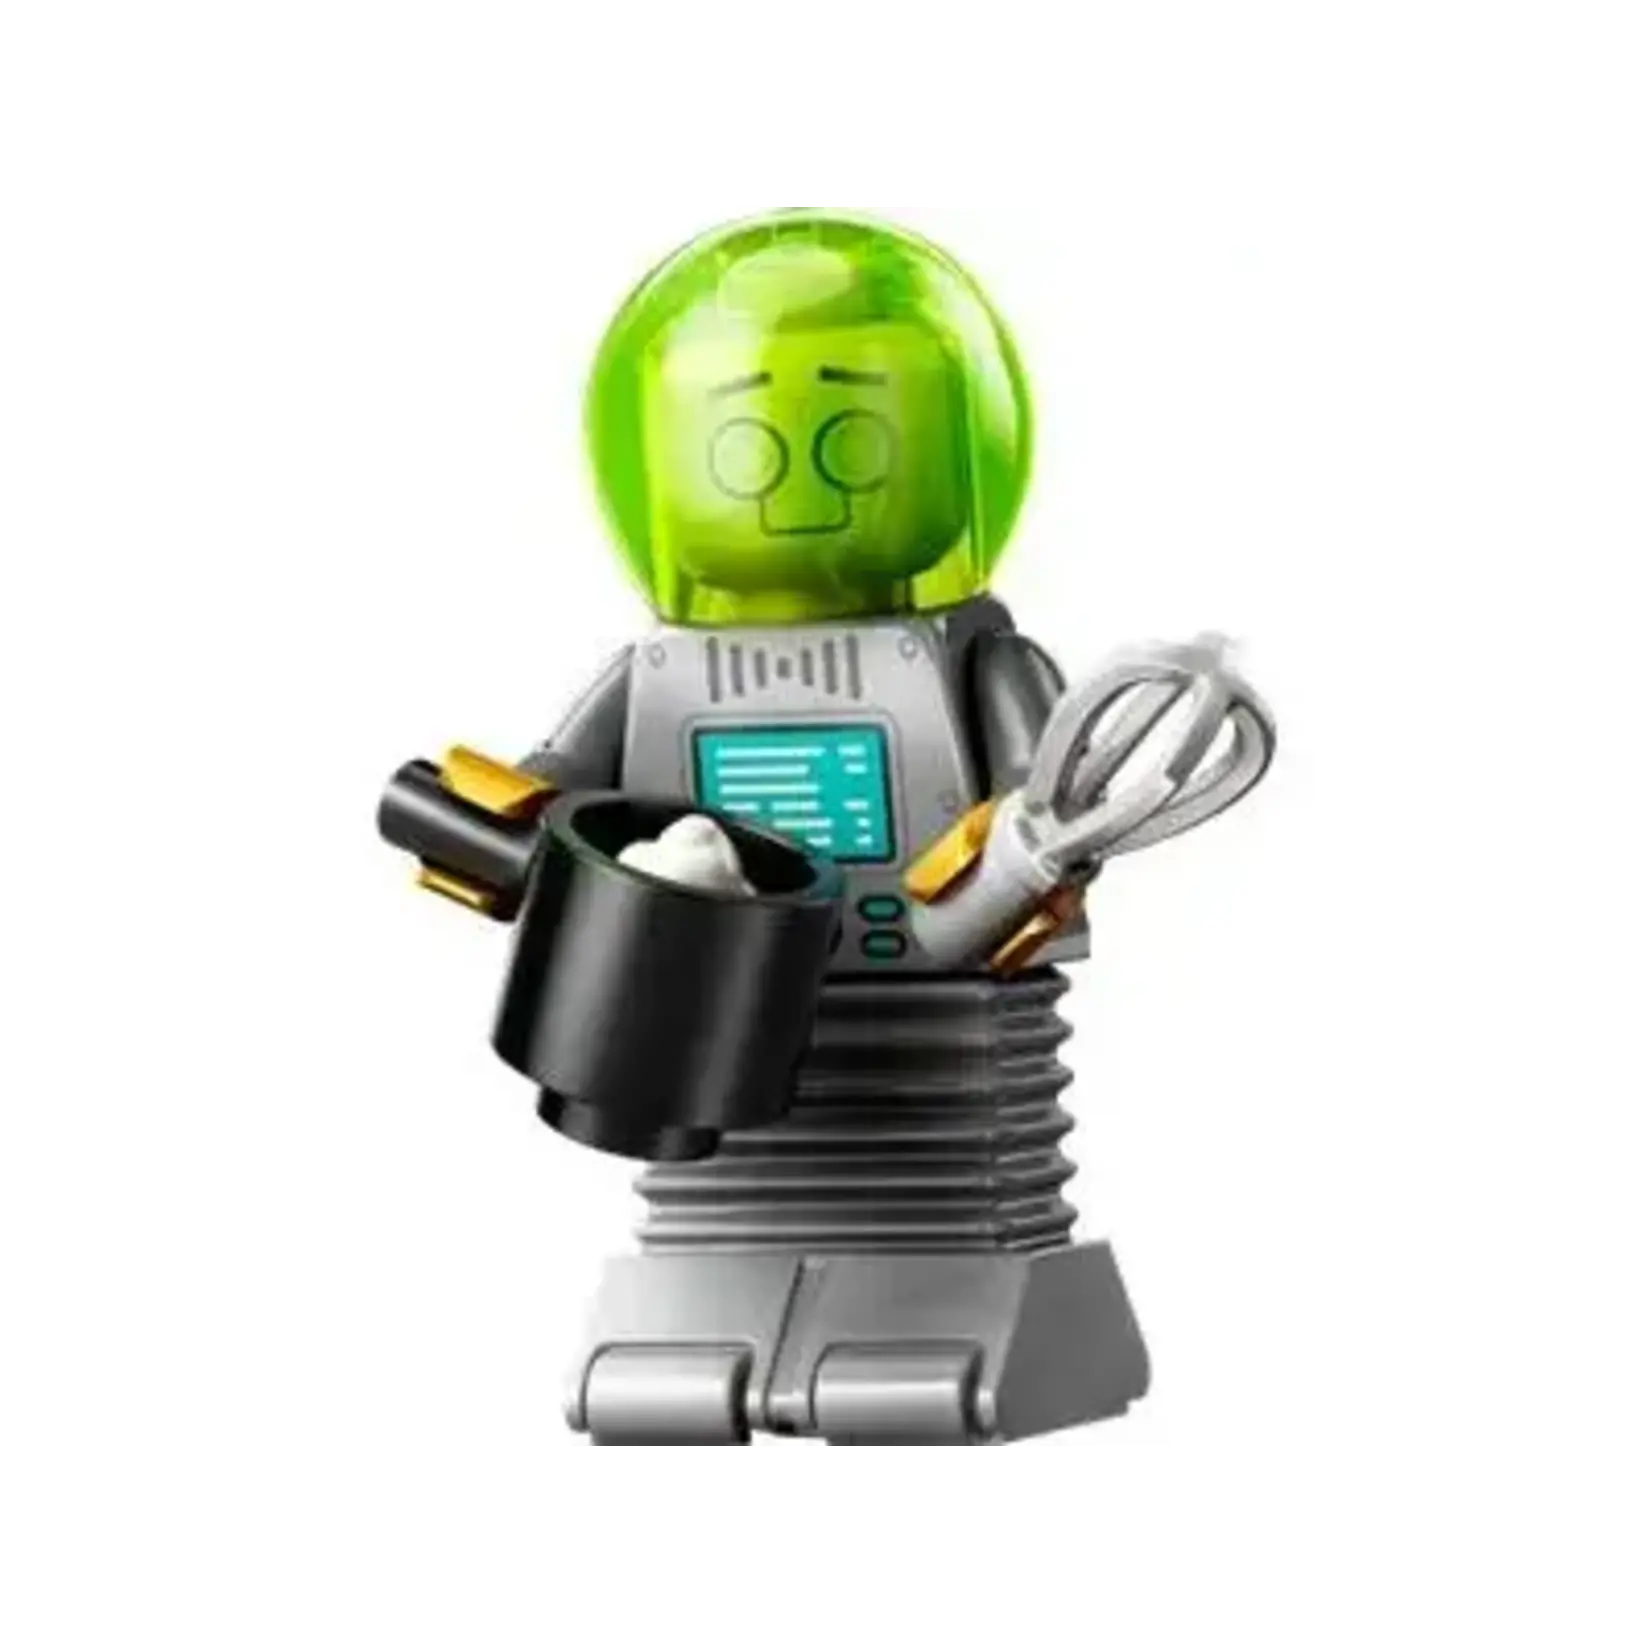 LEGO LEGO Minifigures Series 26 Space 71046 - Robot Butler